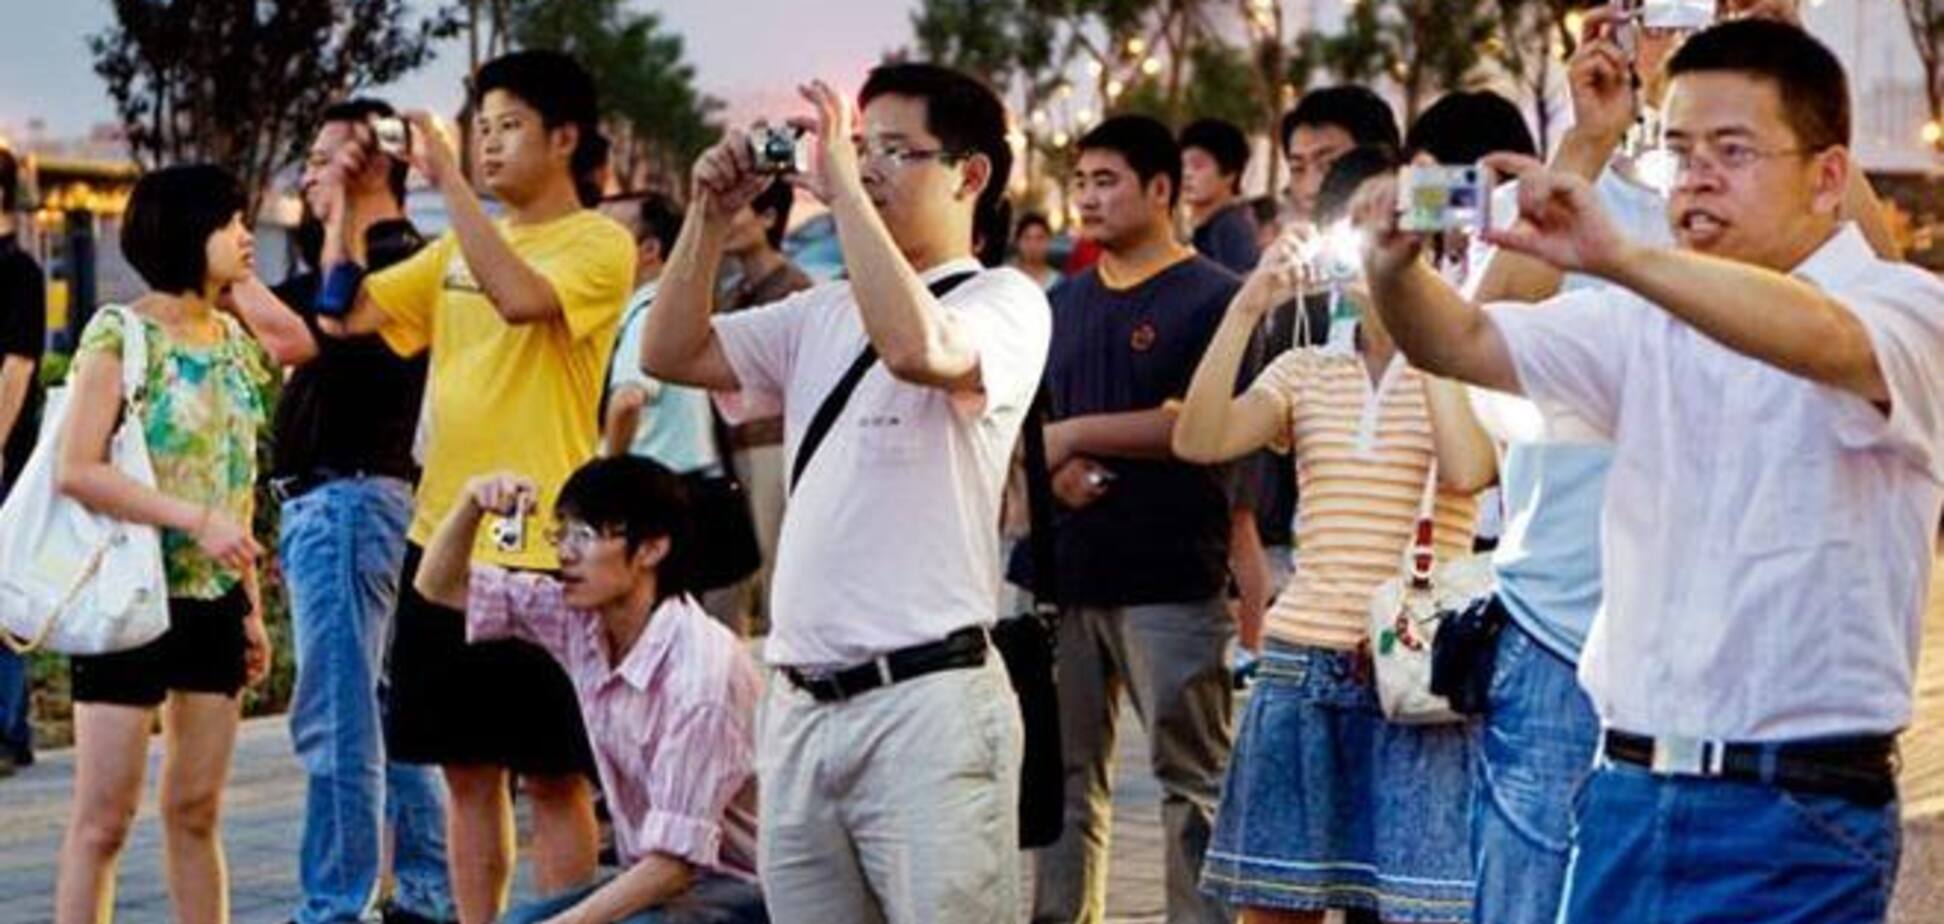 Китайцам запретили ковырять в носу за границей